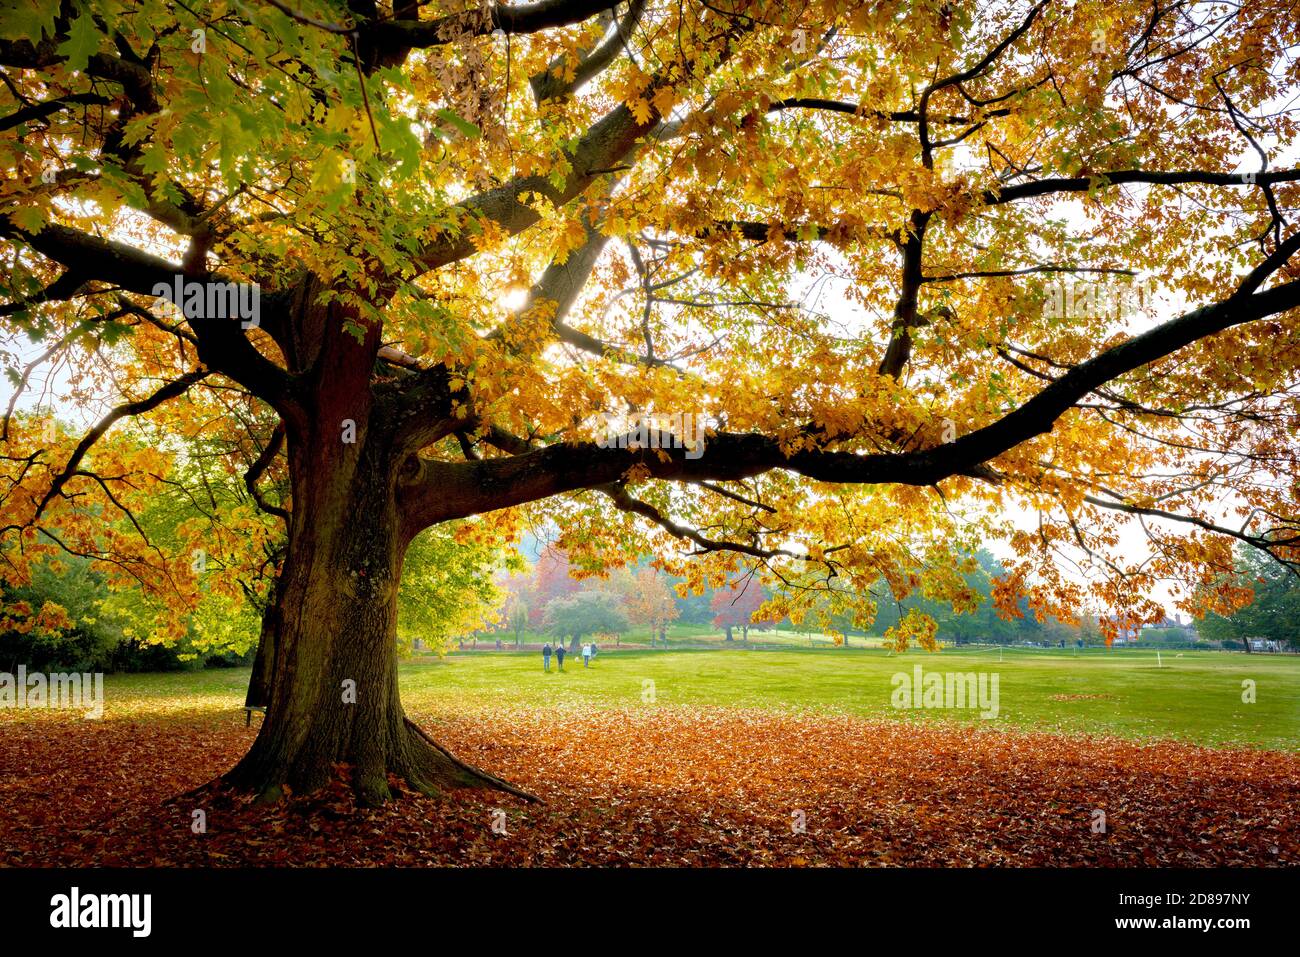 Arbres et feuilles d'automne sur le terrain.Bramcote collines parc Nottingham Angleterre Royaume-Uni Banque D'Images